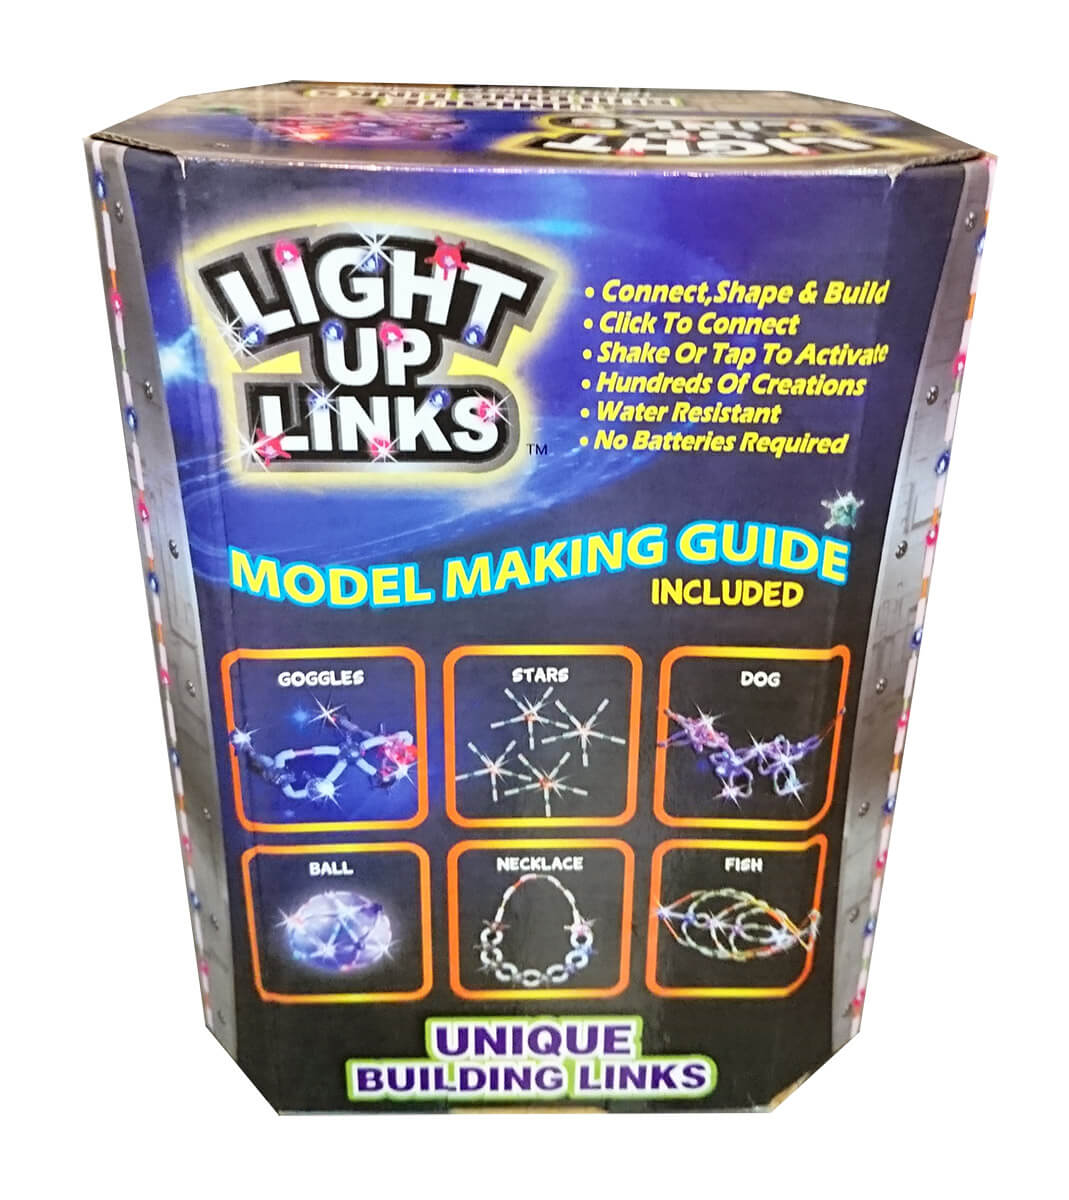 Светящийся конструктор Light up links 120